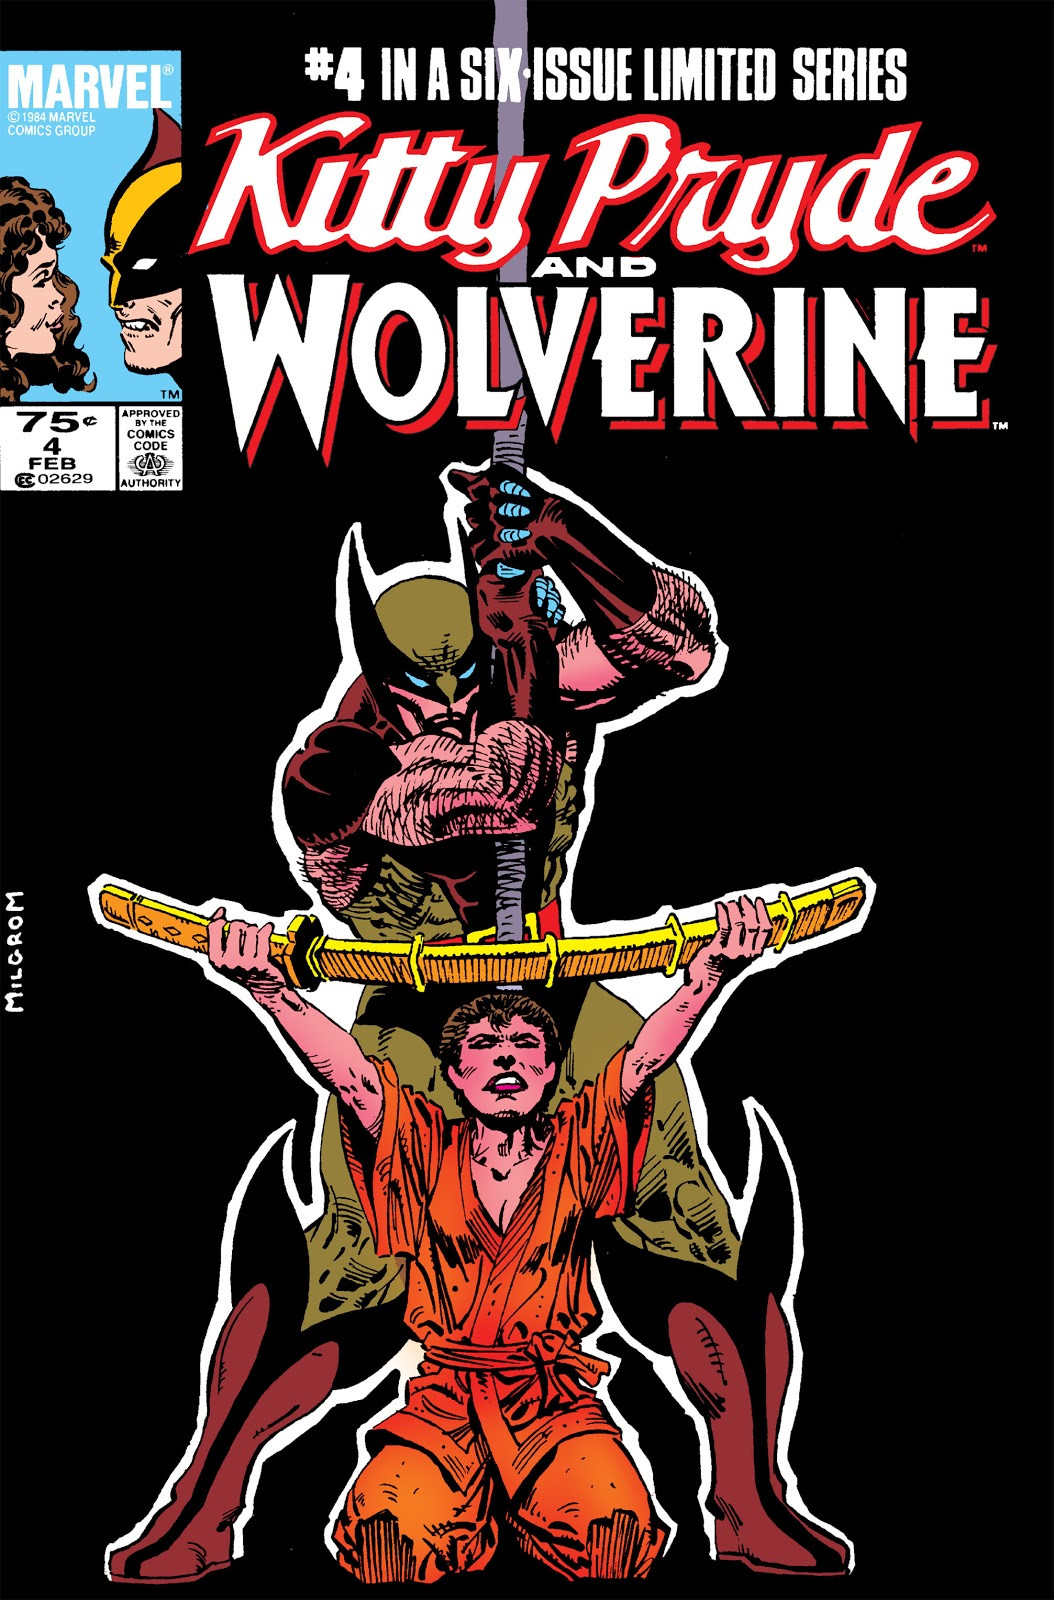 ¿Cual es tú personaje favorito de Marvel? - Página 7 Kitty_Pryde_and_Wolverine_Vol_1_4